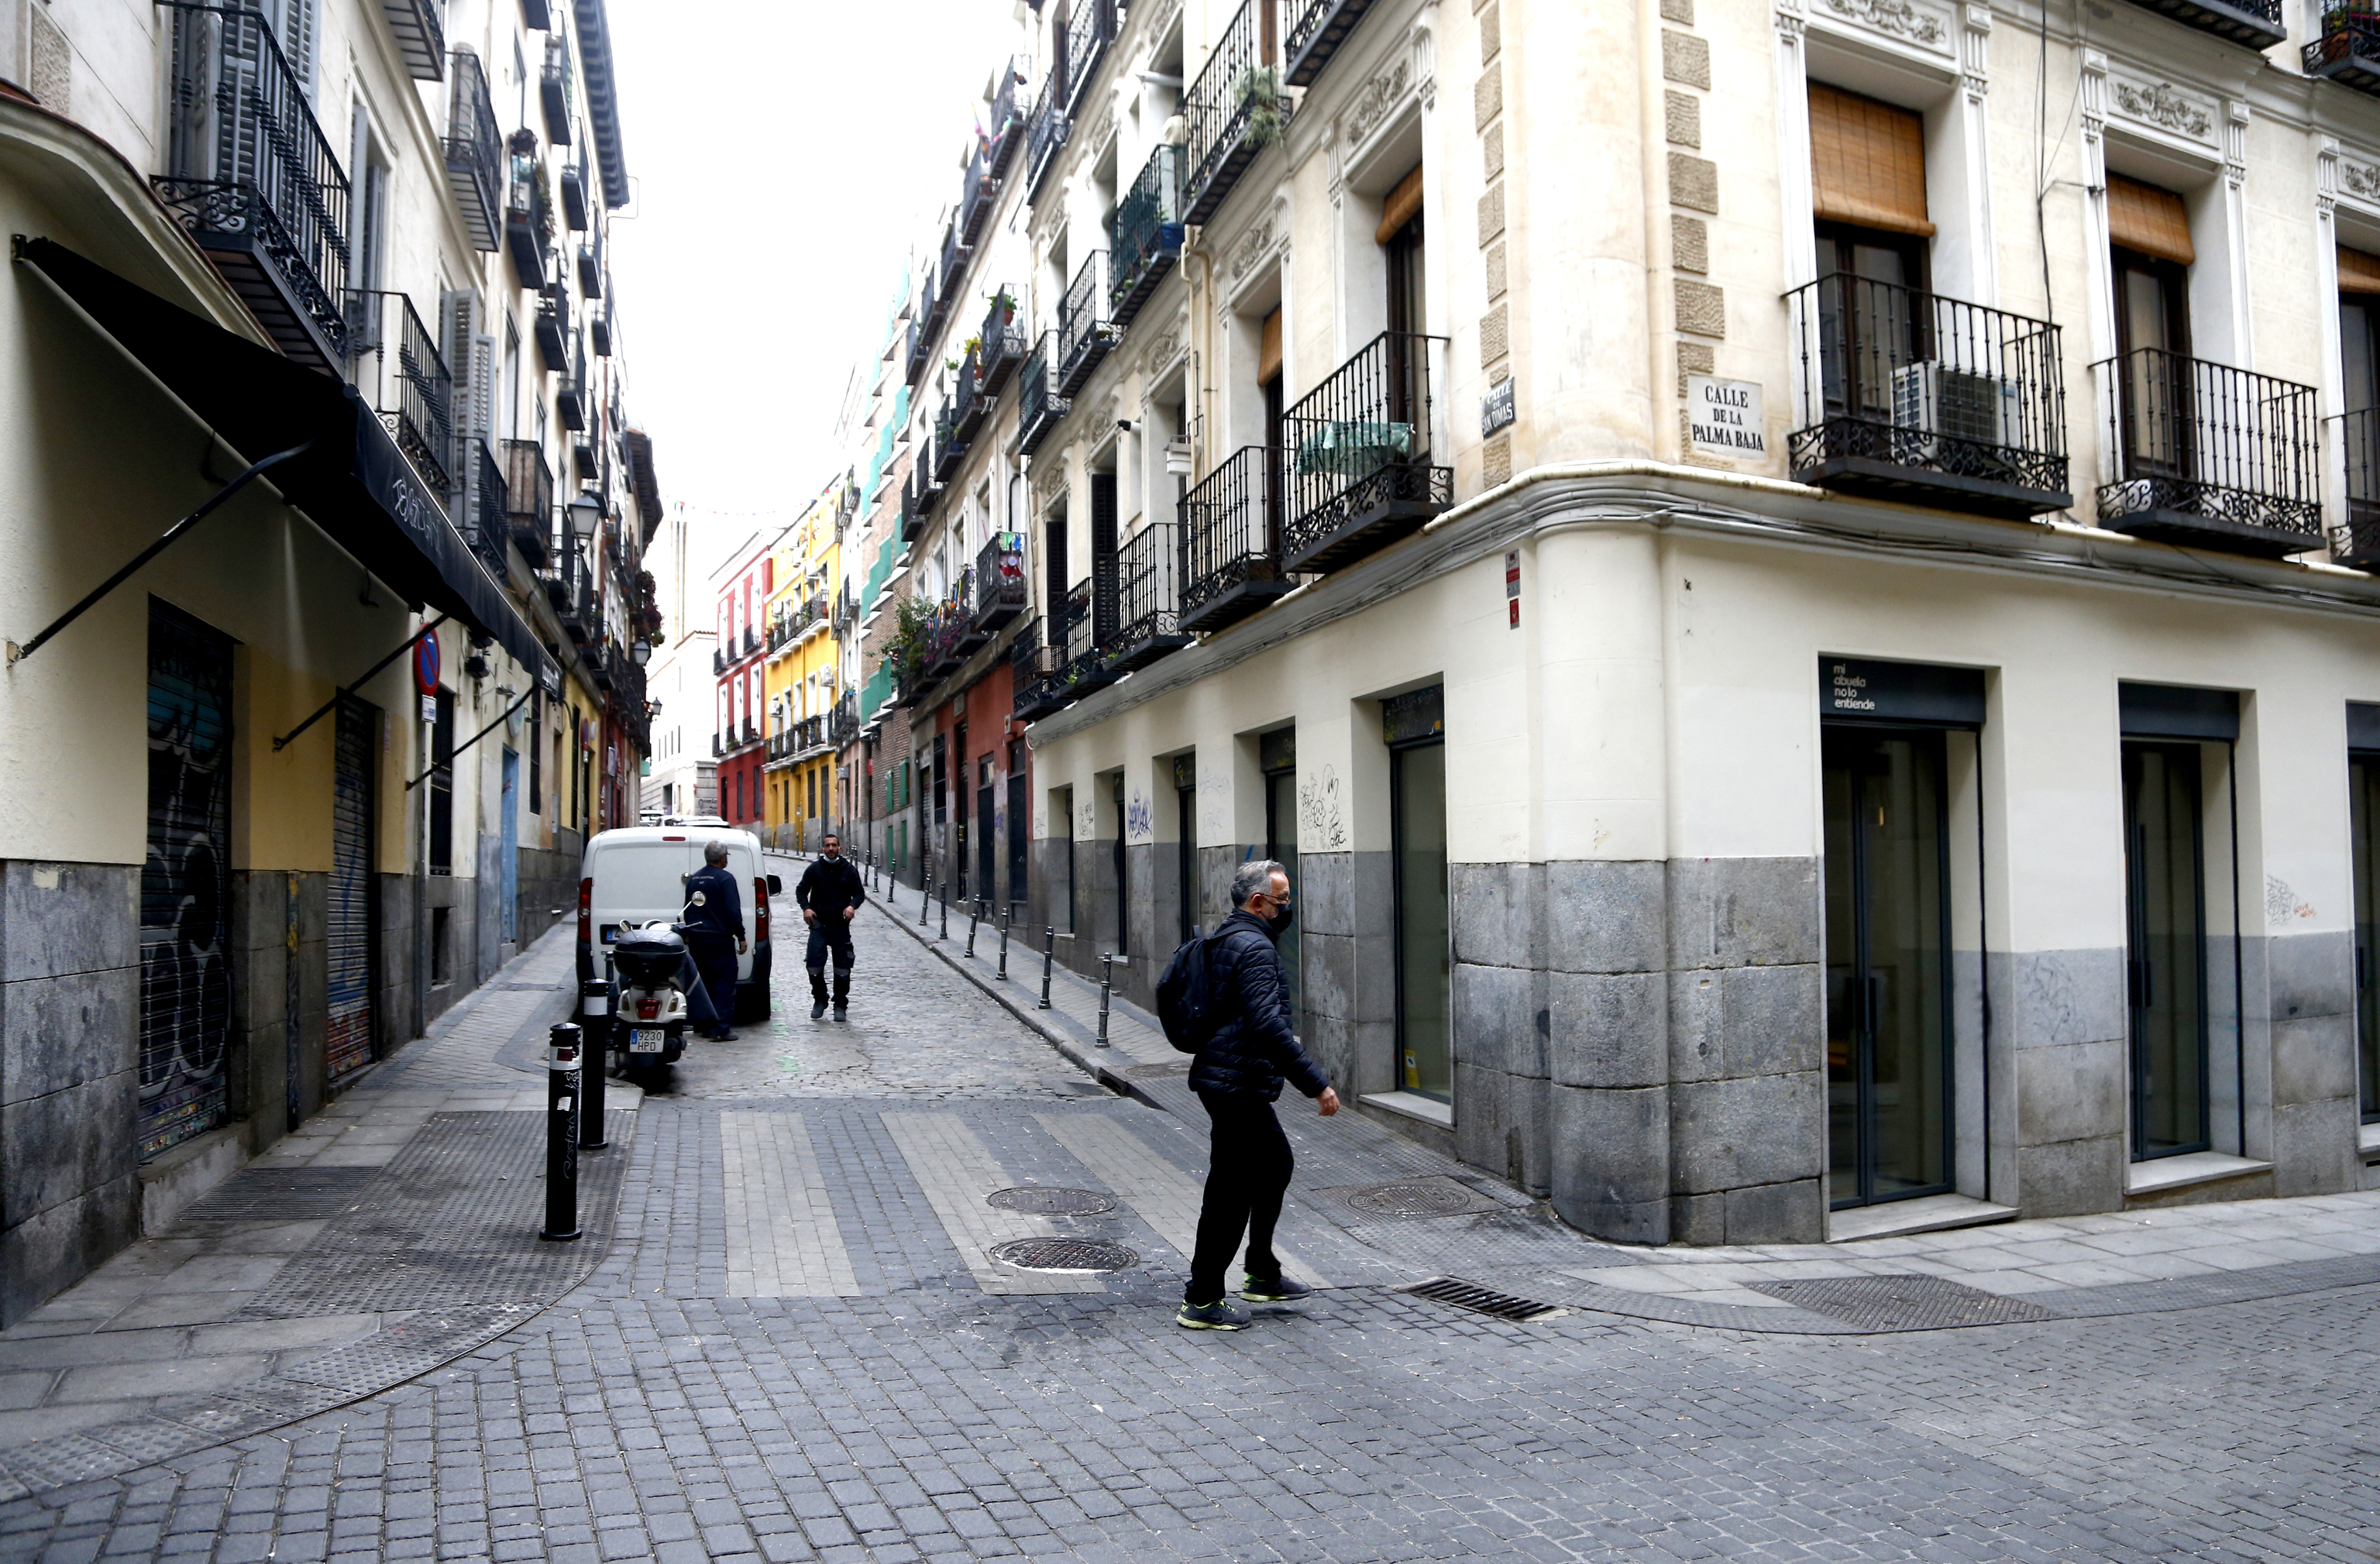 Esquina donde se ubica la vivienda realquilada de forma ilegal, en la calle de San Dimas, en el barrio de Malasaa de Madrid.